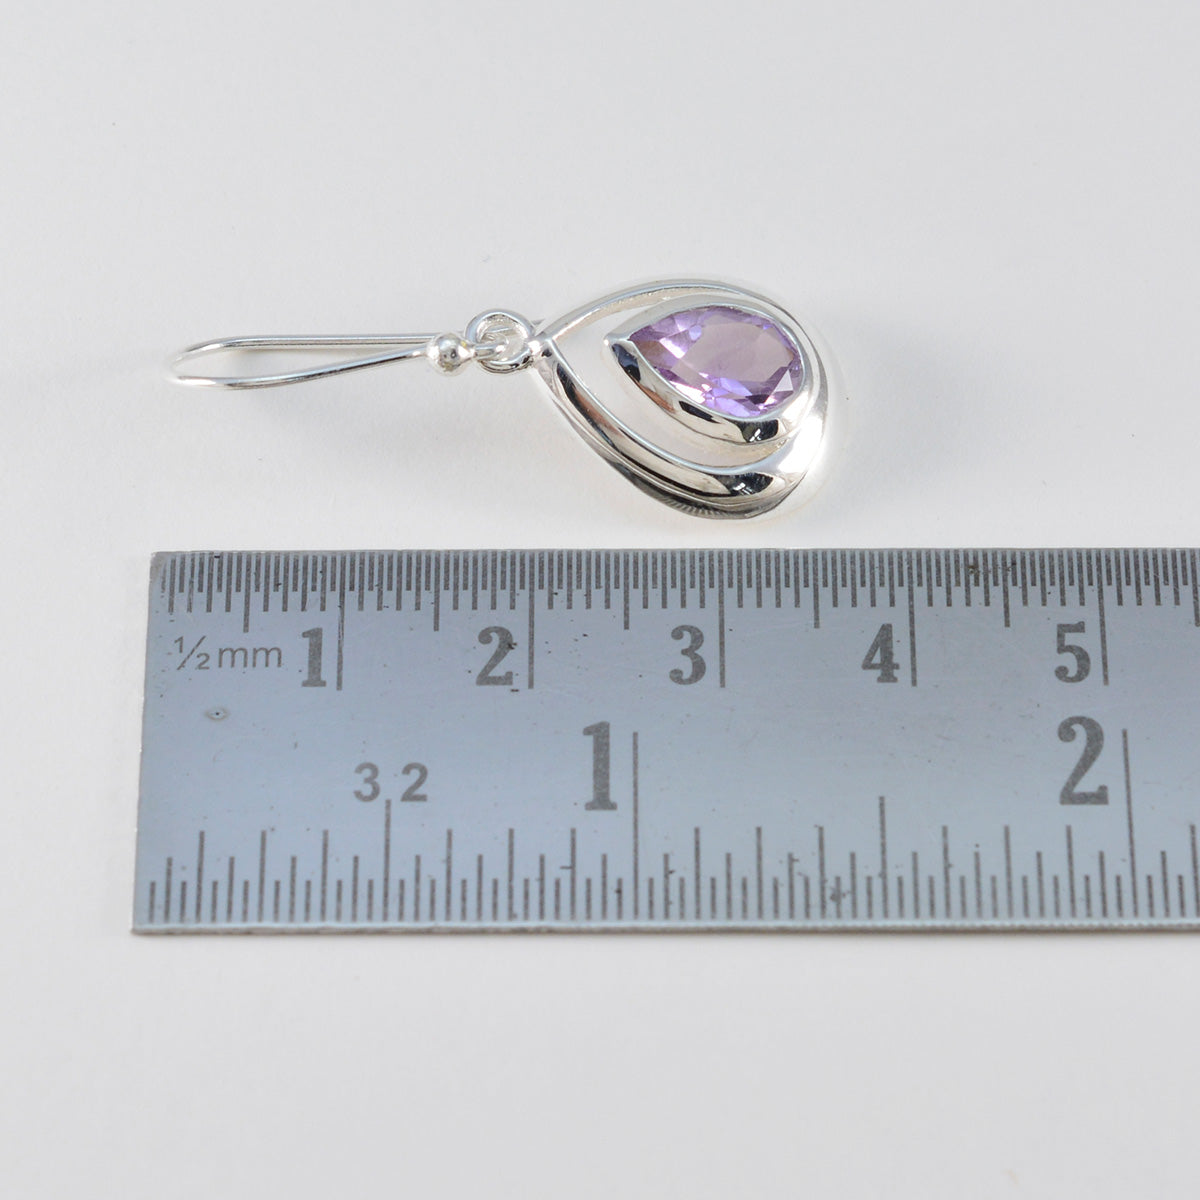 Riyo Spunky 925 Sterling Silver Earring For Sister Amethyst Earring Bezel Setting Purple Earring Dangle Earring